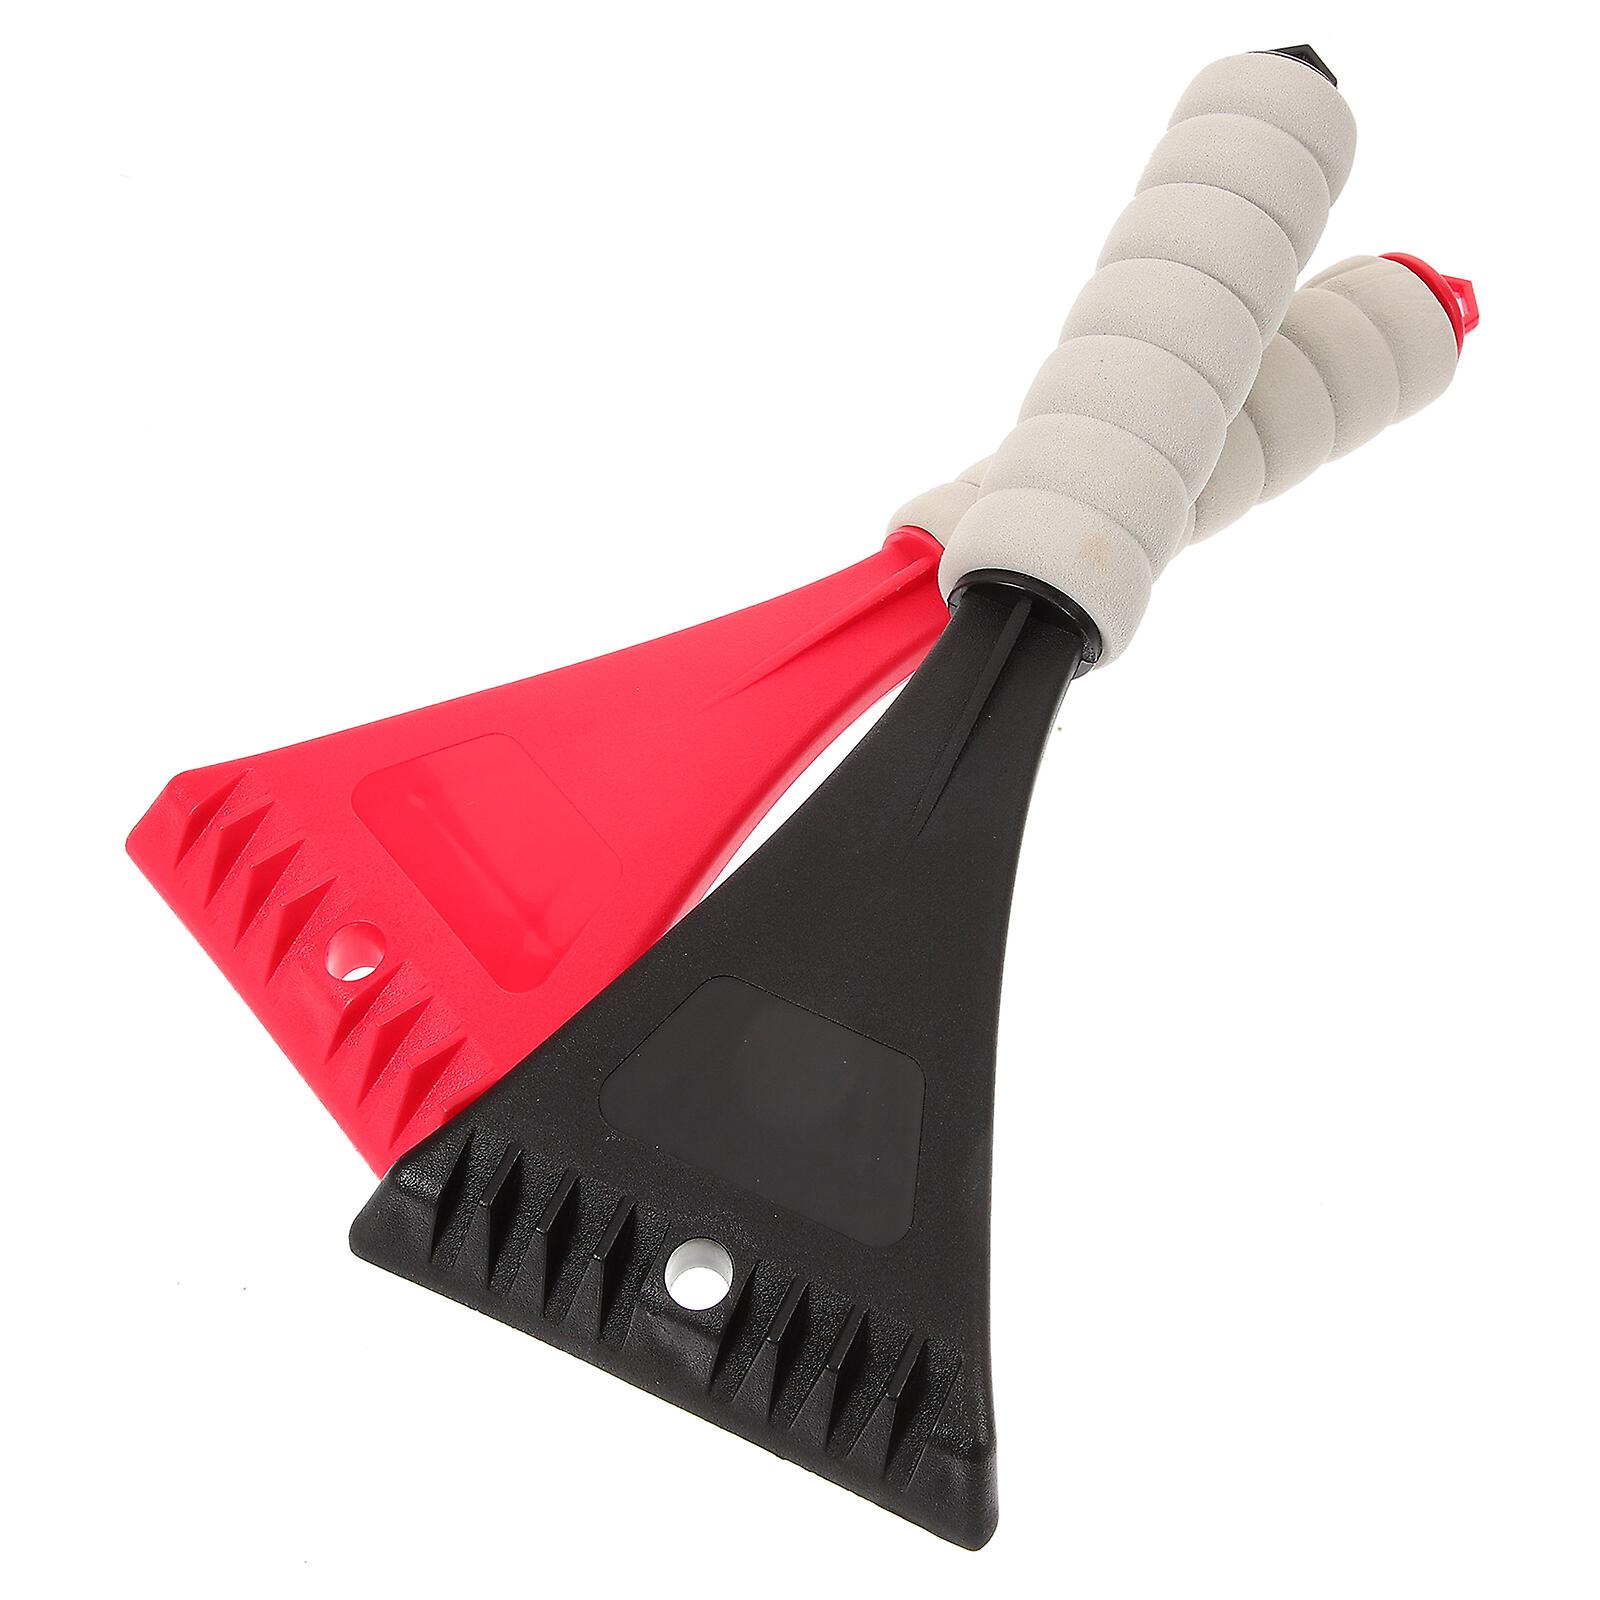 2pcs Snow Shovel Scoop Shovel Utility Shovel Ice Scraper Tool For Car Emergency Beach